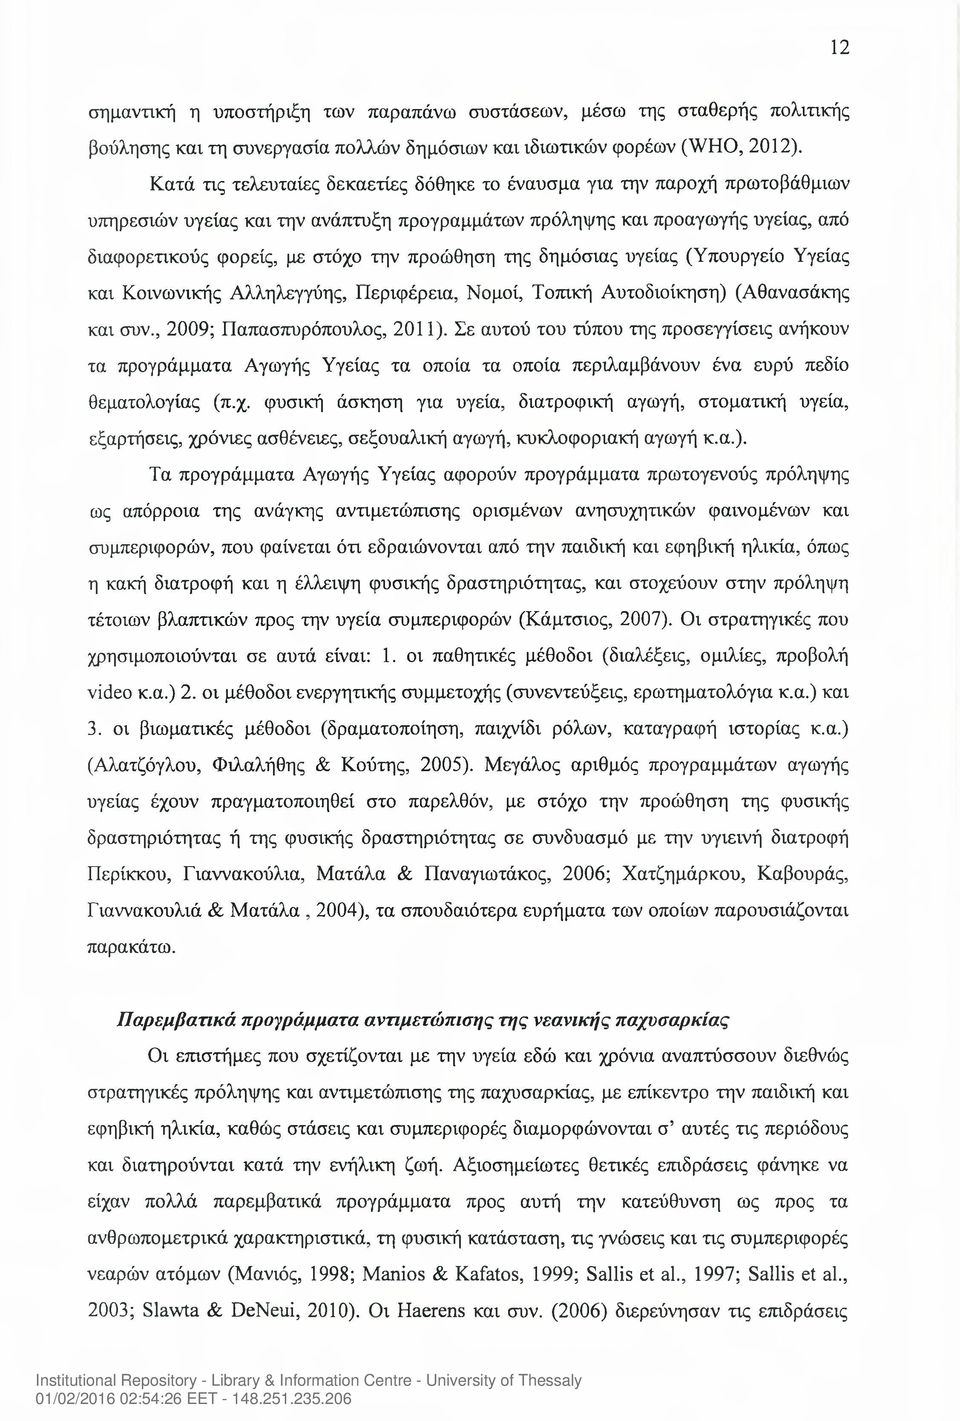 προώθηση της δημόσιας υγείας (Υπουργείο Υγείας και Κοινωνικής Αλληλεγγύης, Περιφέρεια, Νομοί, Τοπική Αυτοδιοίκηση) (Αθανασάκης και συν., 2009; Παπασπυρόπουλος, 2011).